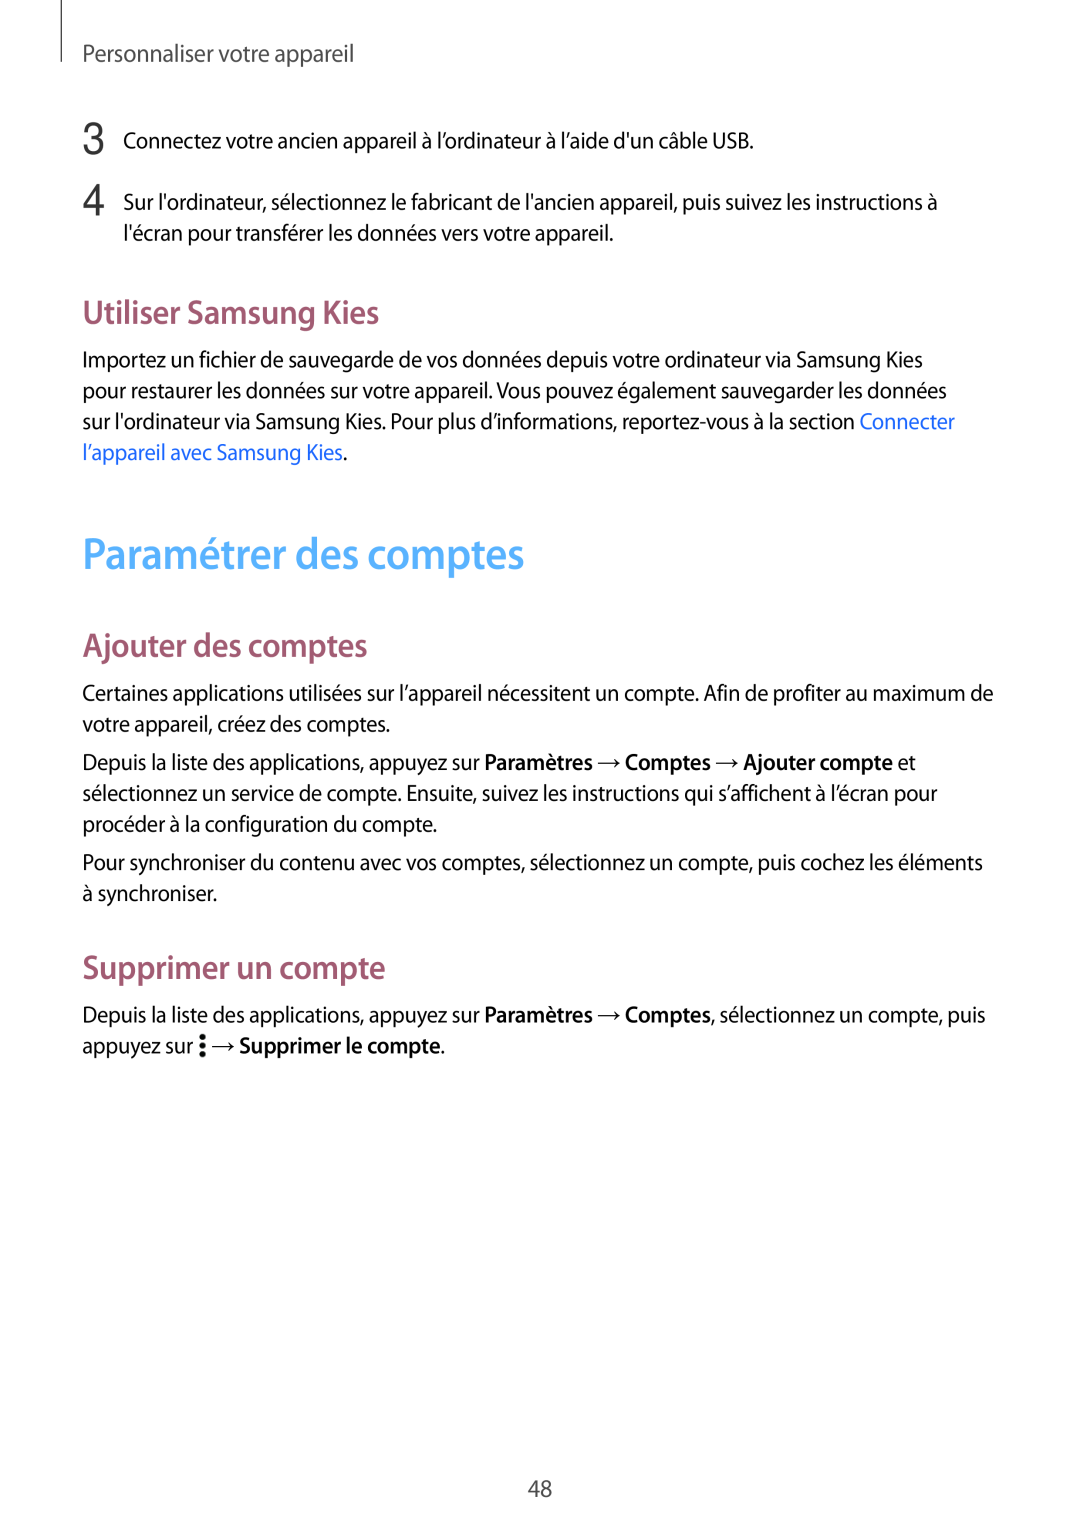 Samsung SM-A300FZKUSFR manual Paramétrer des comptes, Utiliser Samsung Kies, Ajouter des comptes, Supprimer un compte 